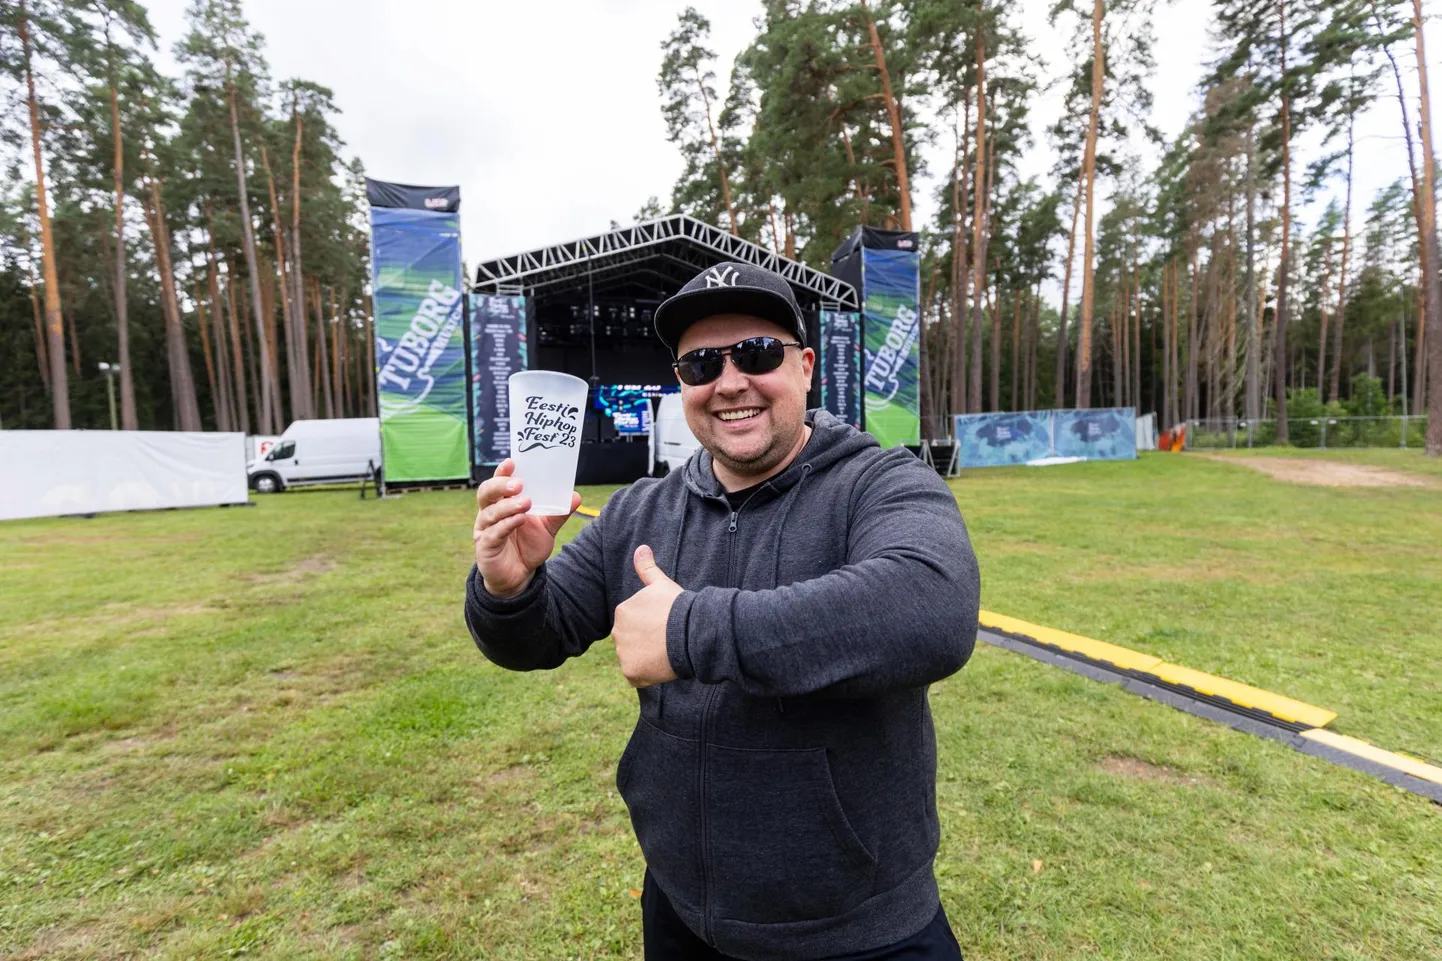 Hiphopfestivali korraldaja Maido Mölsi sõnul on sel üritusel kasutatavatest panditopsidest saanud juba omamoodi meene, mida igal aastal endaga koju kaasa võetakse ja kogutakse.